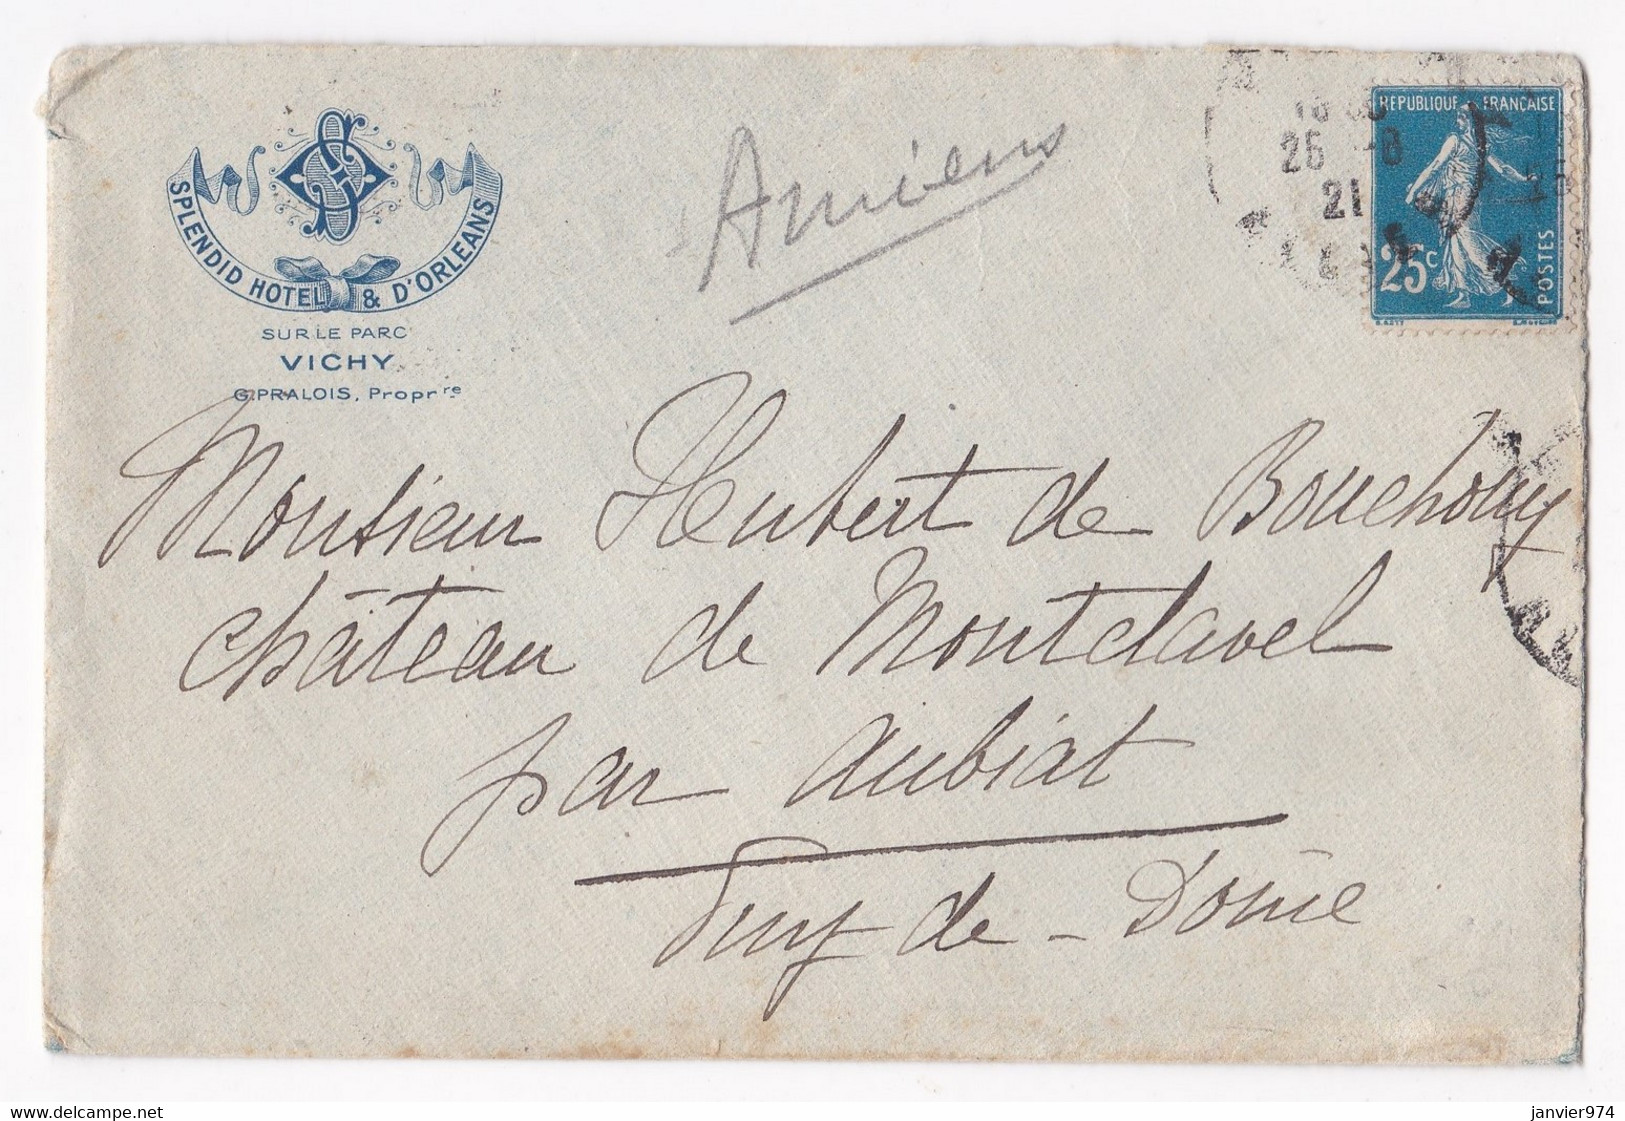 Enveloppe 1921, Splendid Hôtel & D’Orléans Vichy Pour Le Château De Montclavel Aubiat - Briefe U. Dokumente